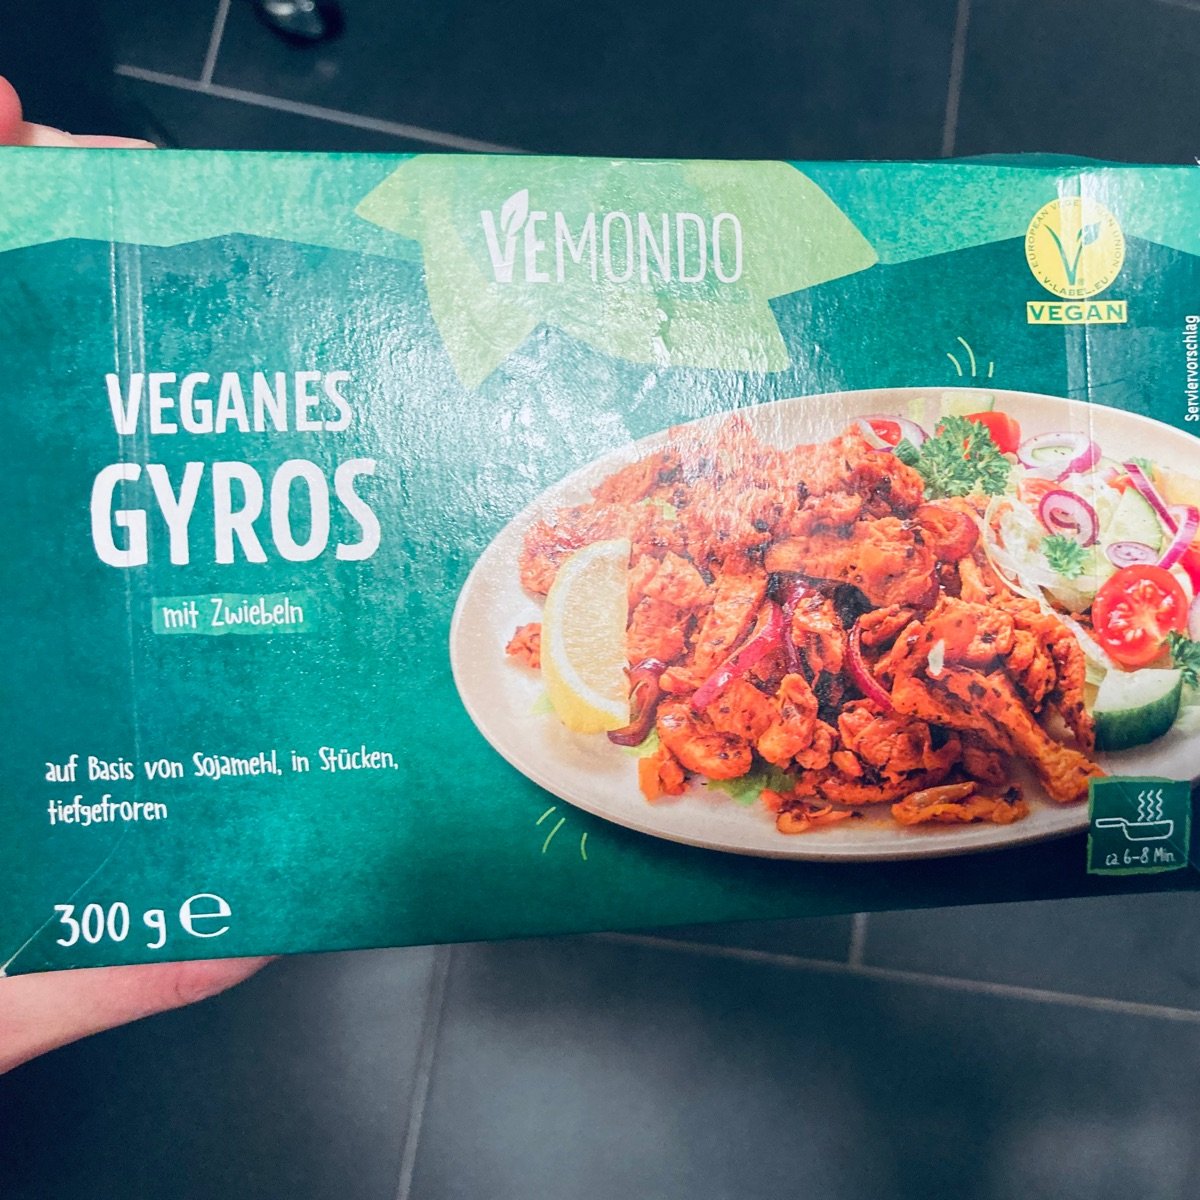 Vemondo Gyros Review Zwiebeln, | abillion vegan mit